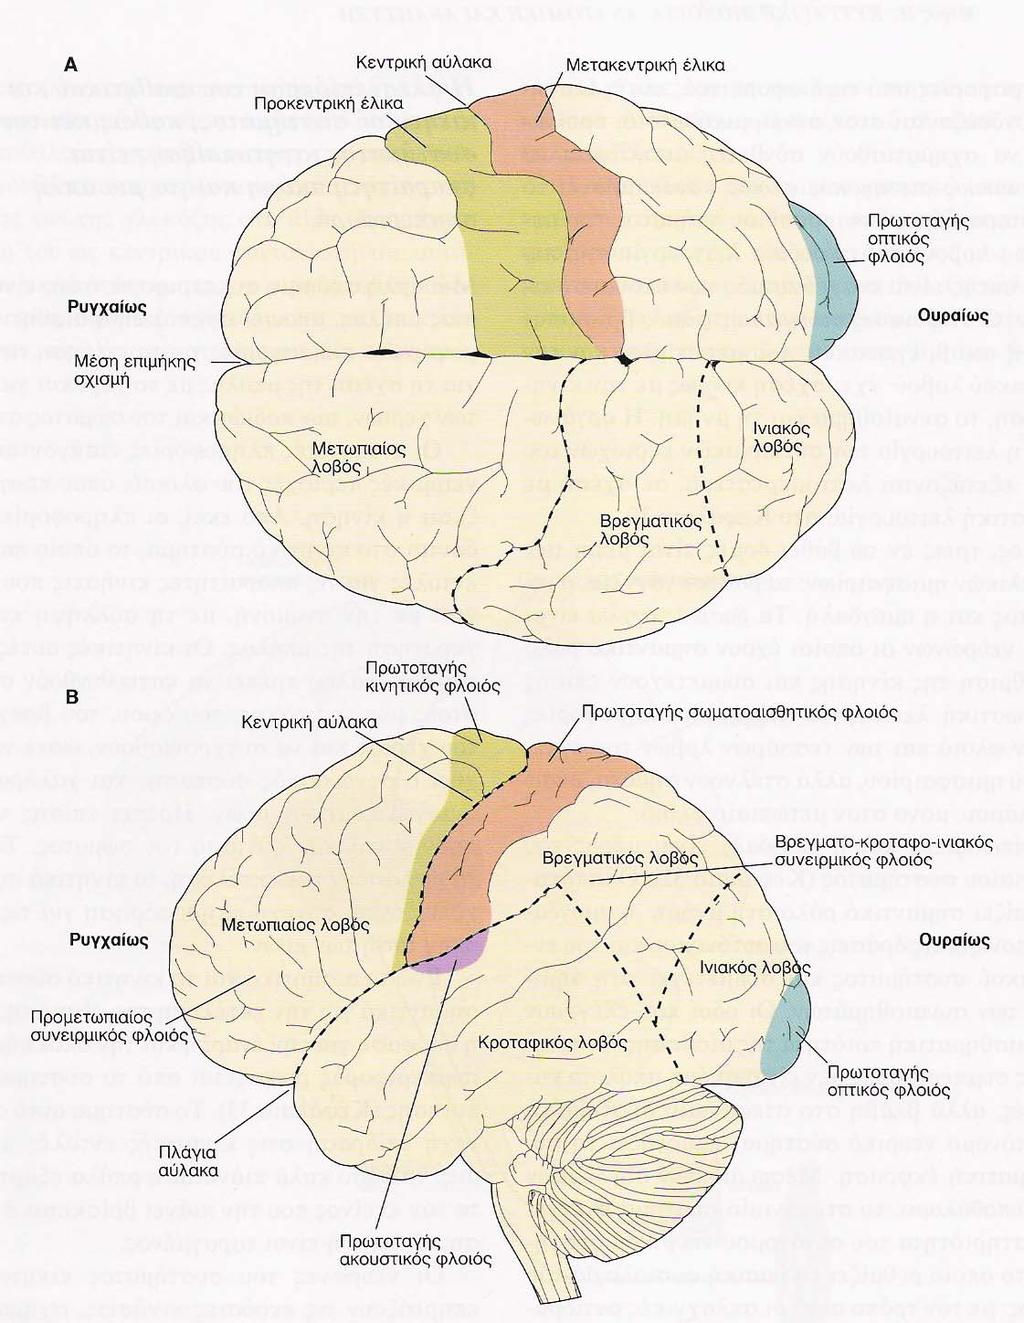 Σχήμα 3Α,Β. Εγκεφαλικός φλοιός και αισθητικές περιοχές, πηγή: [1] Οι πληροφορίες από τις διάφορες αυτές αισθήσεις συνδυάζονται στον συνειρμικό φλοιό, προκειμένου να σχηματισθούν σύνθετες αντιλήψεις.